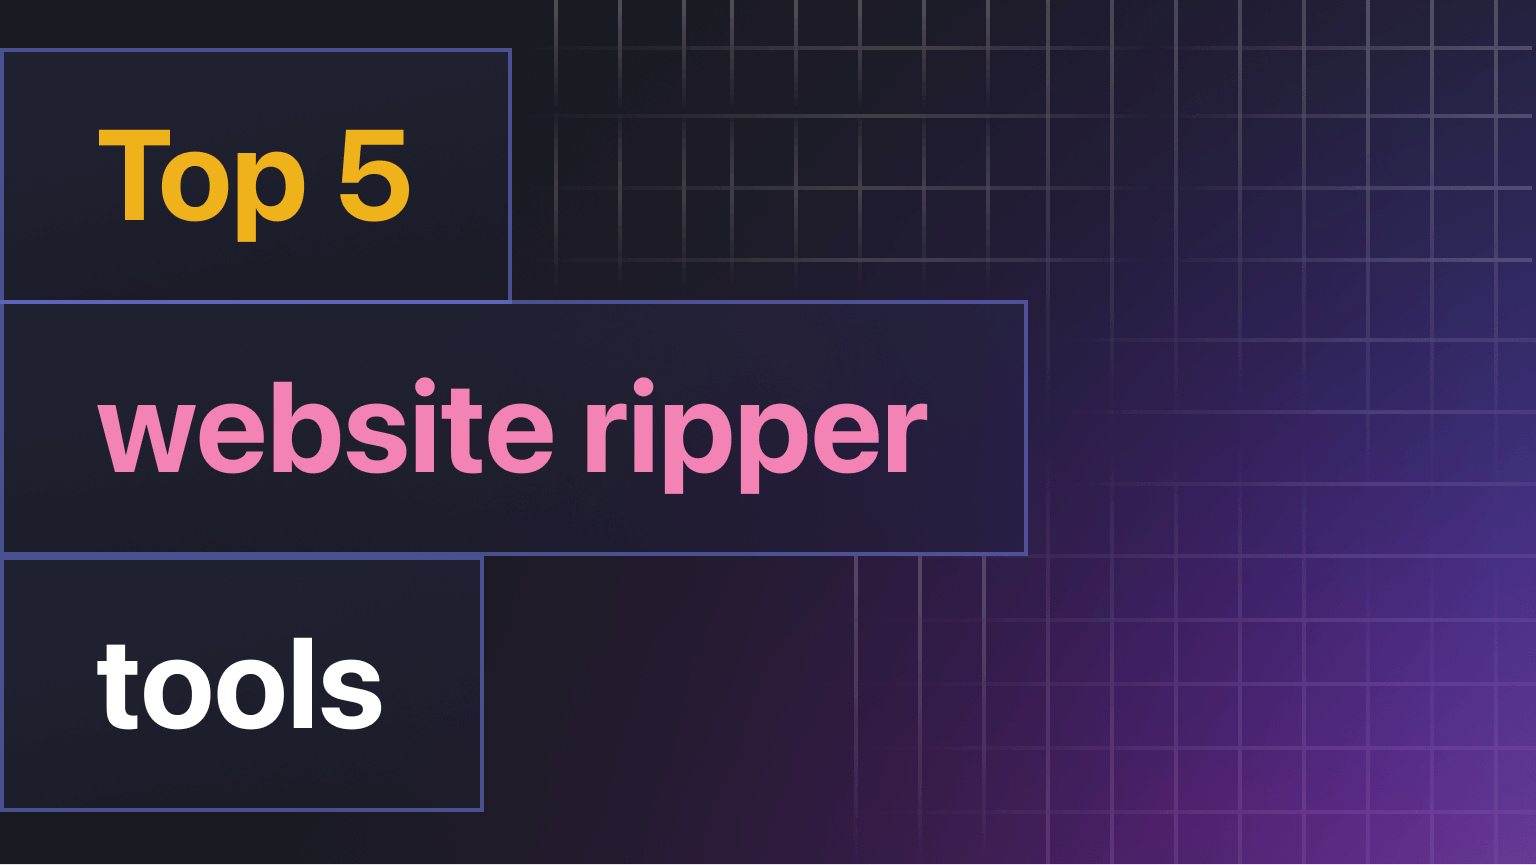 Top website ripper tools